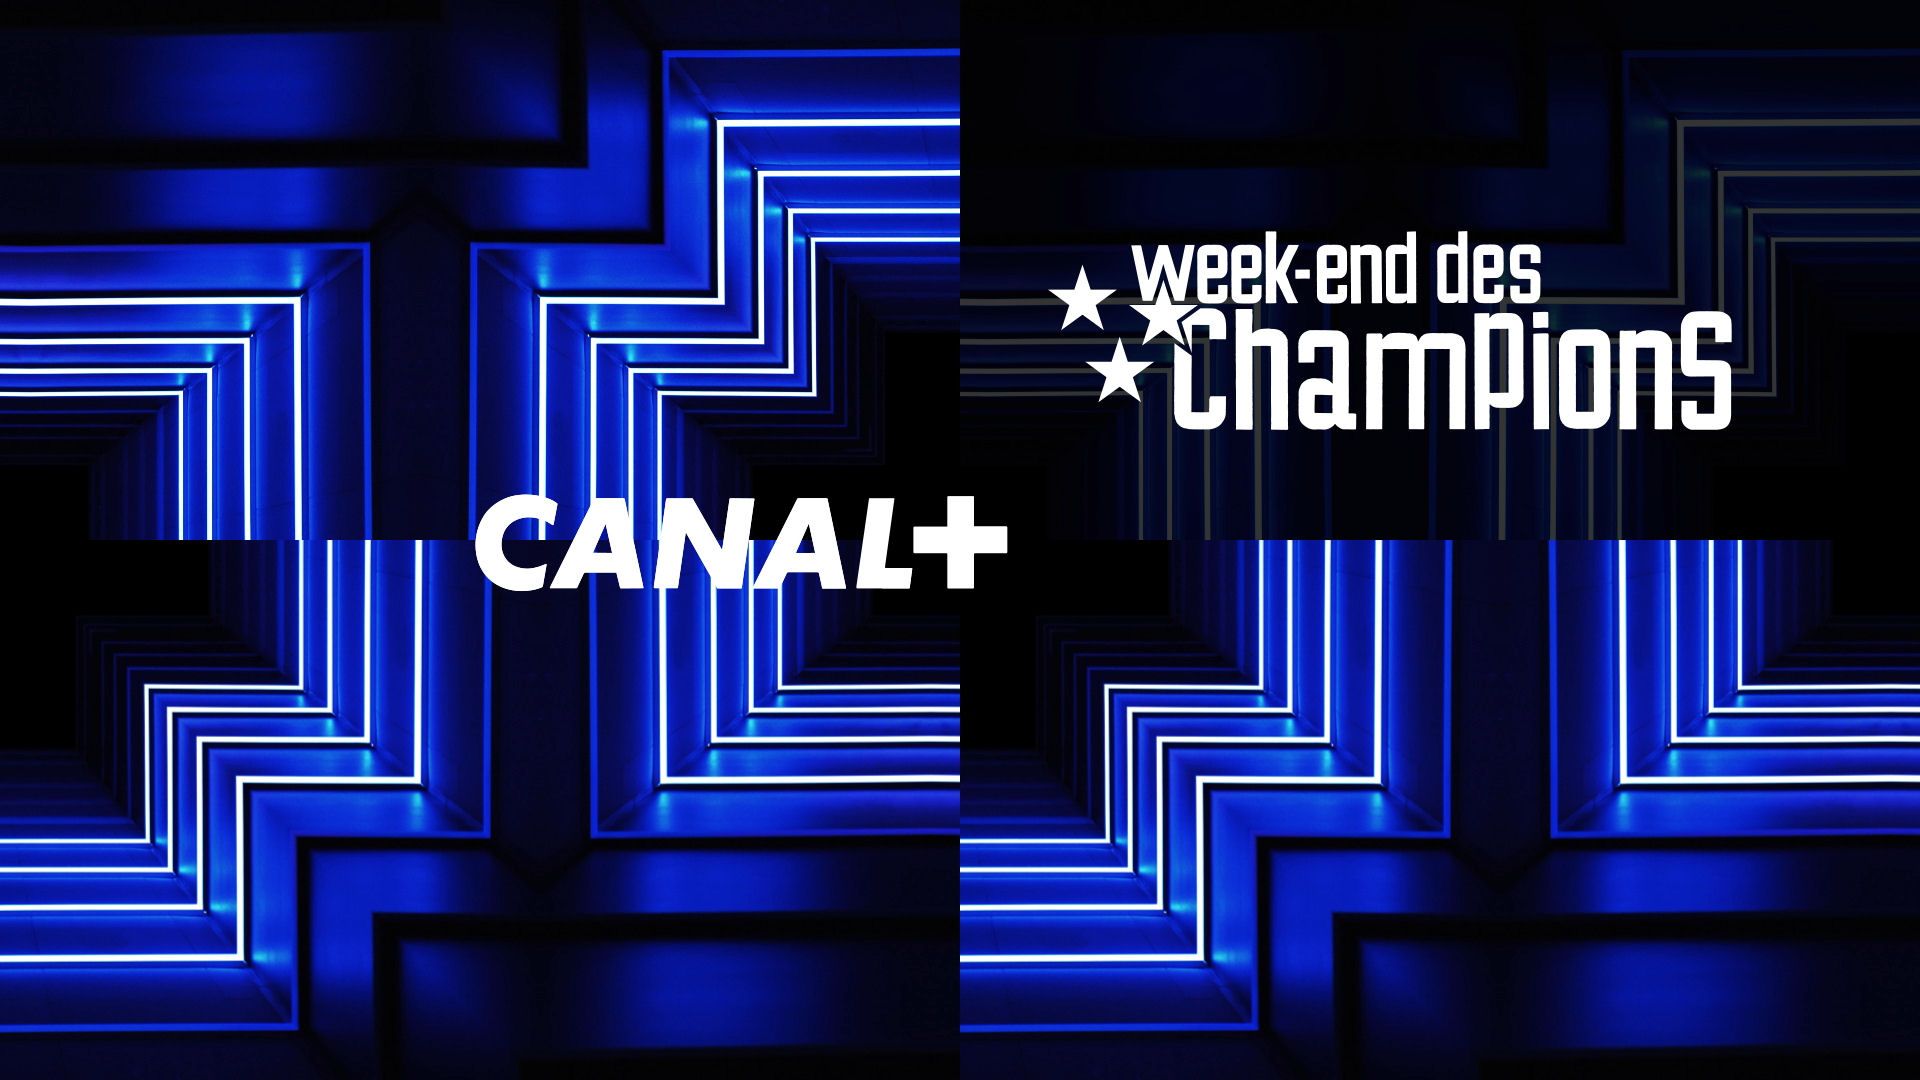 Medios – Canal+ lanza nueva oferta de abono con Champions weekend